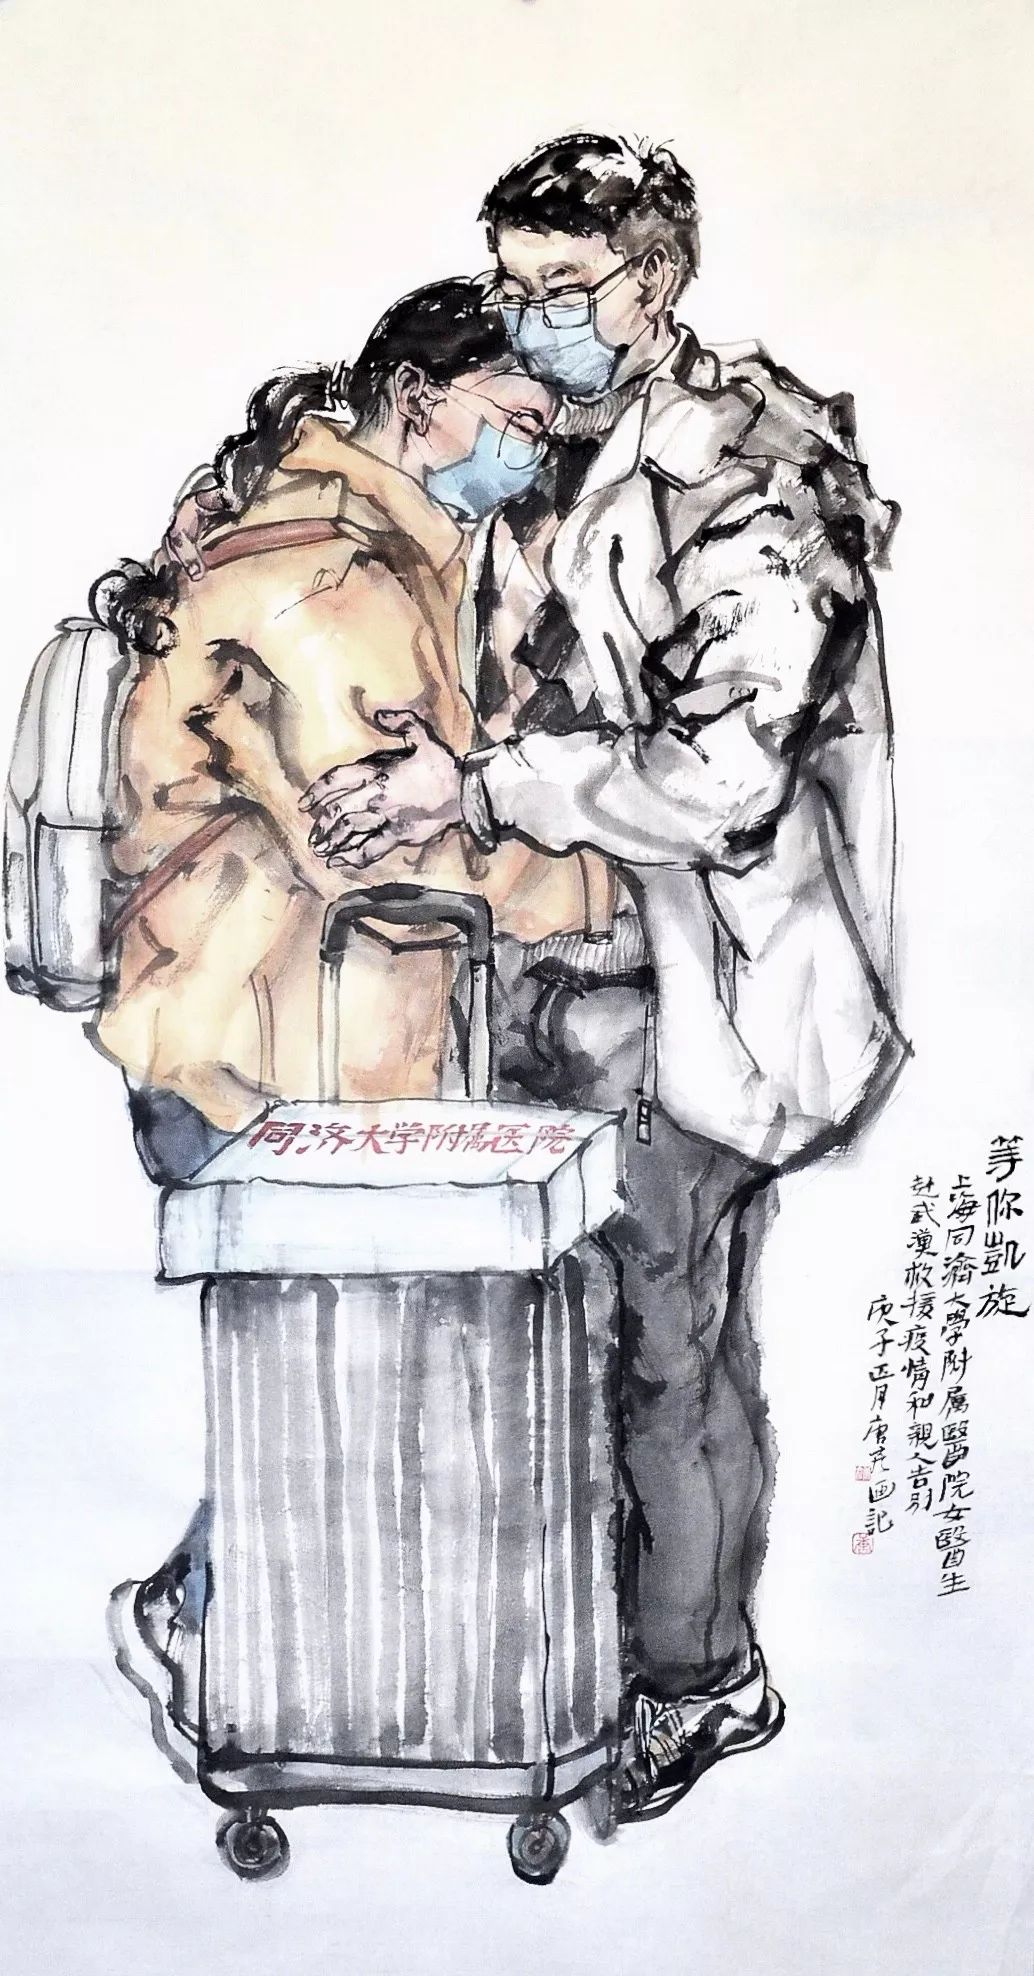 众志成城 抗击疫情——四川美术家在行动(二)国画篇